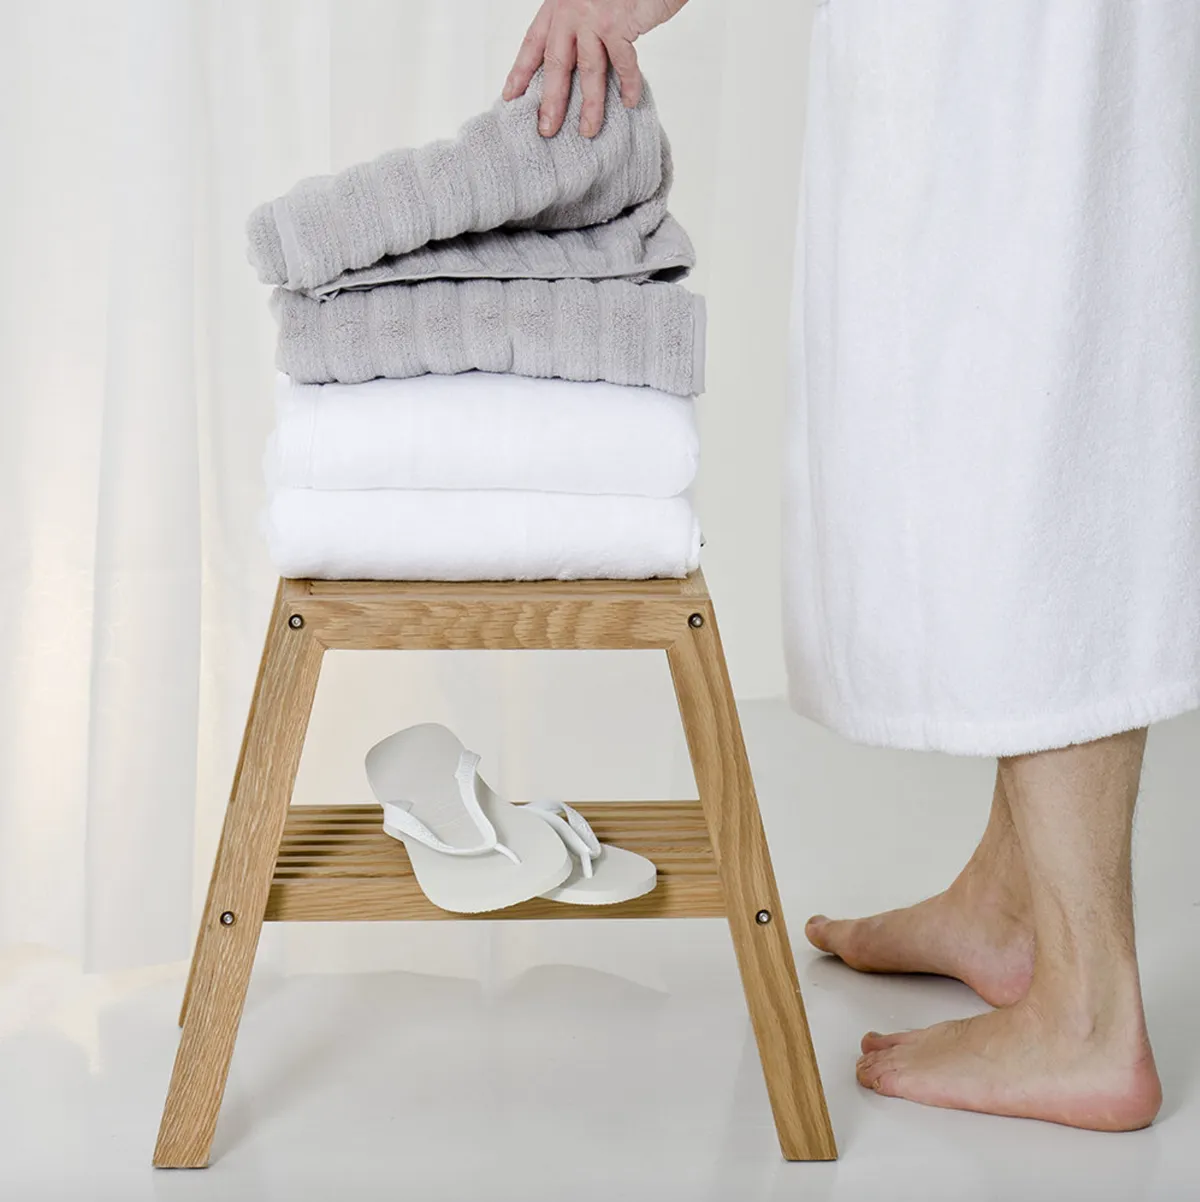 Towel storage ideas - bathroom stool